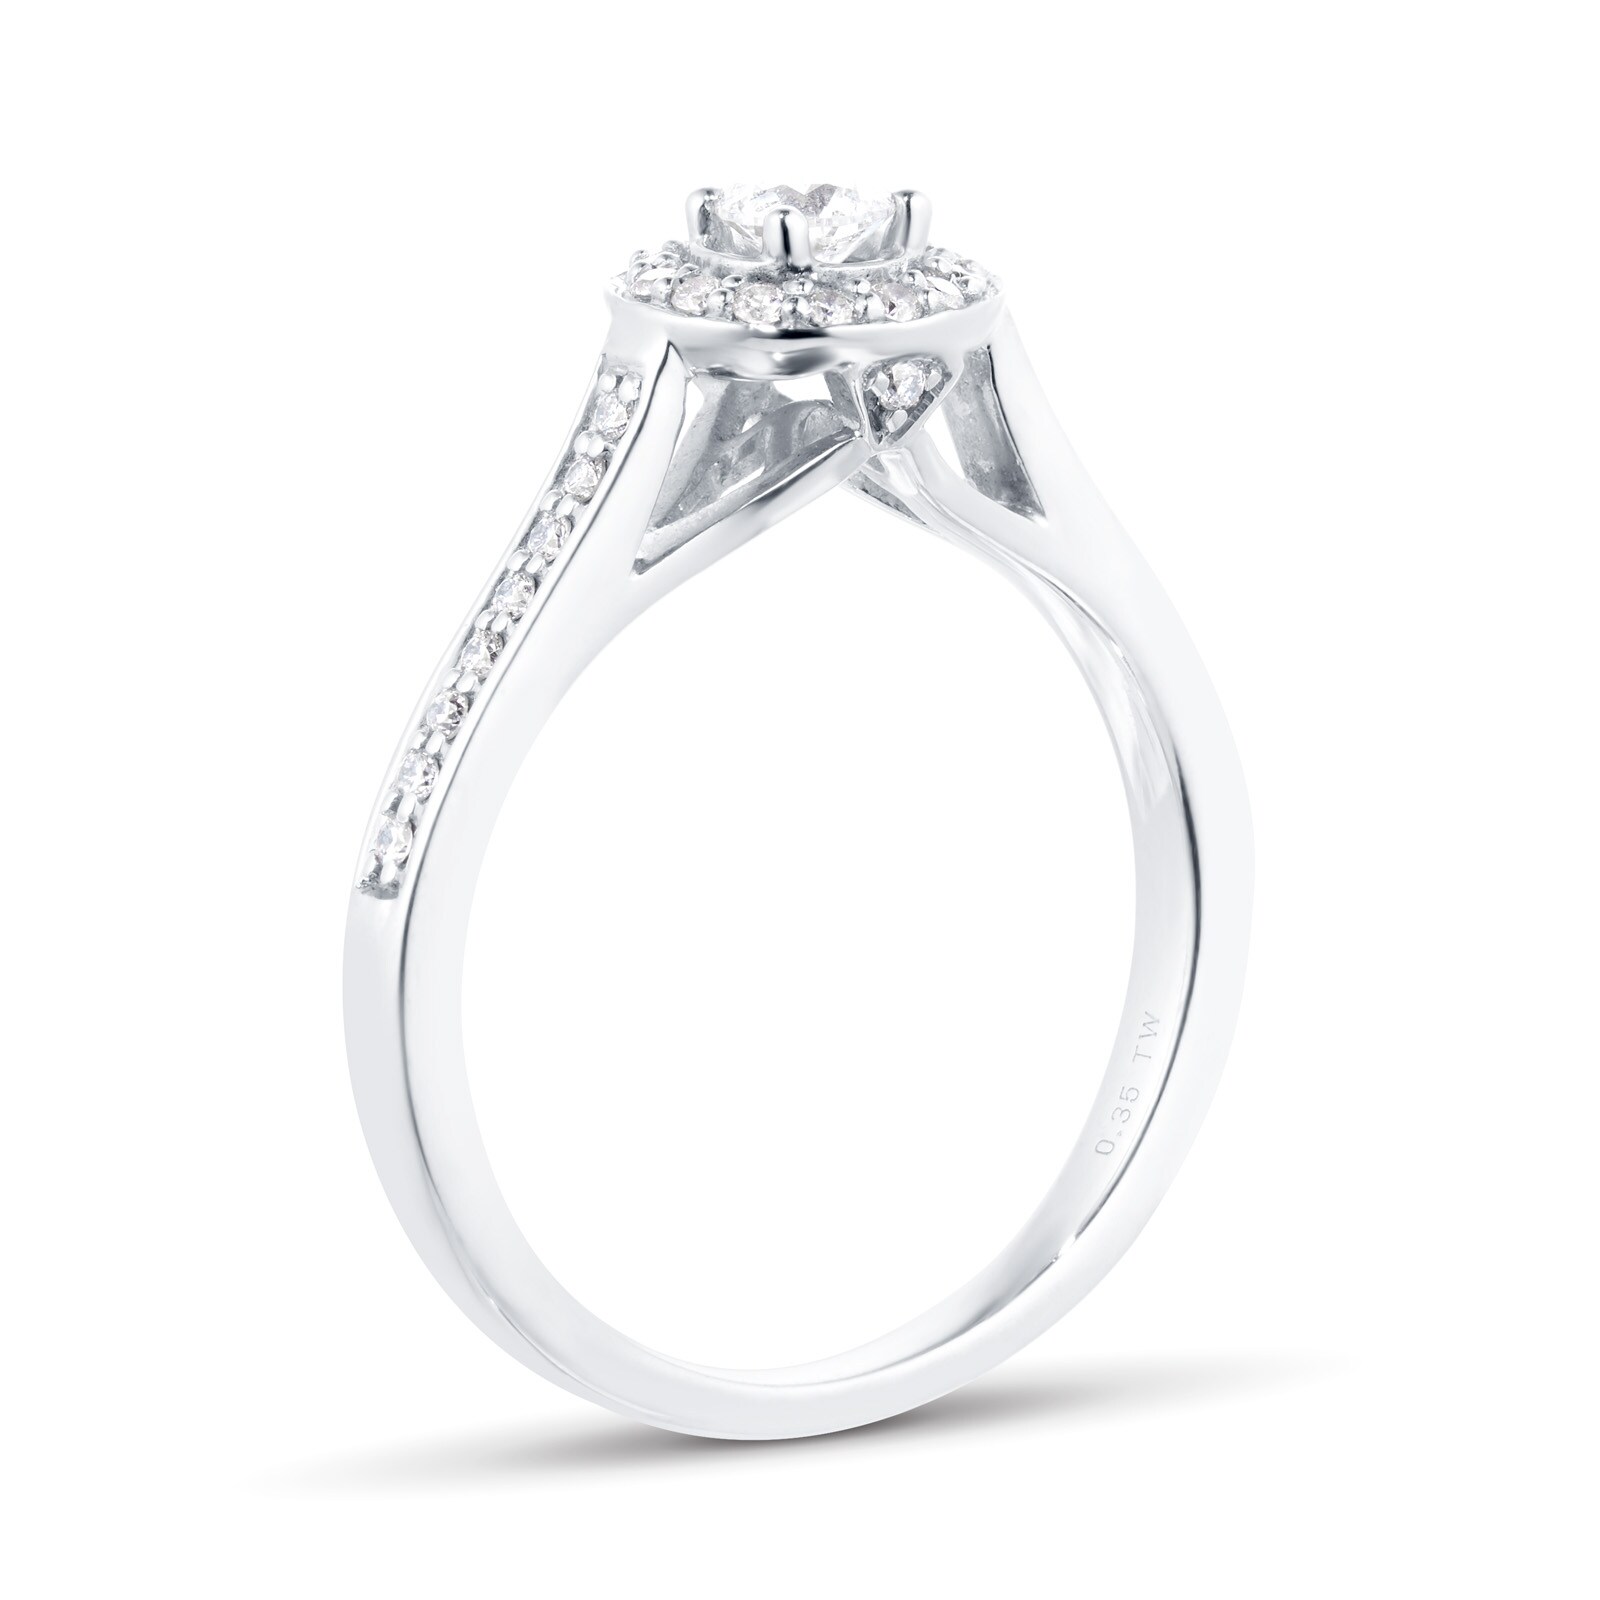 Size O - Jenny Packham 18 Carat White Gold Diamond Engagement Ring - 0.33  Carat | eBay